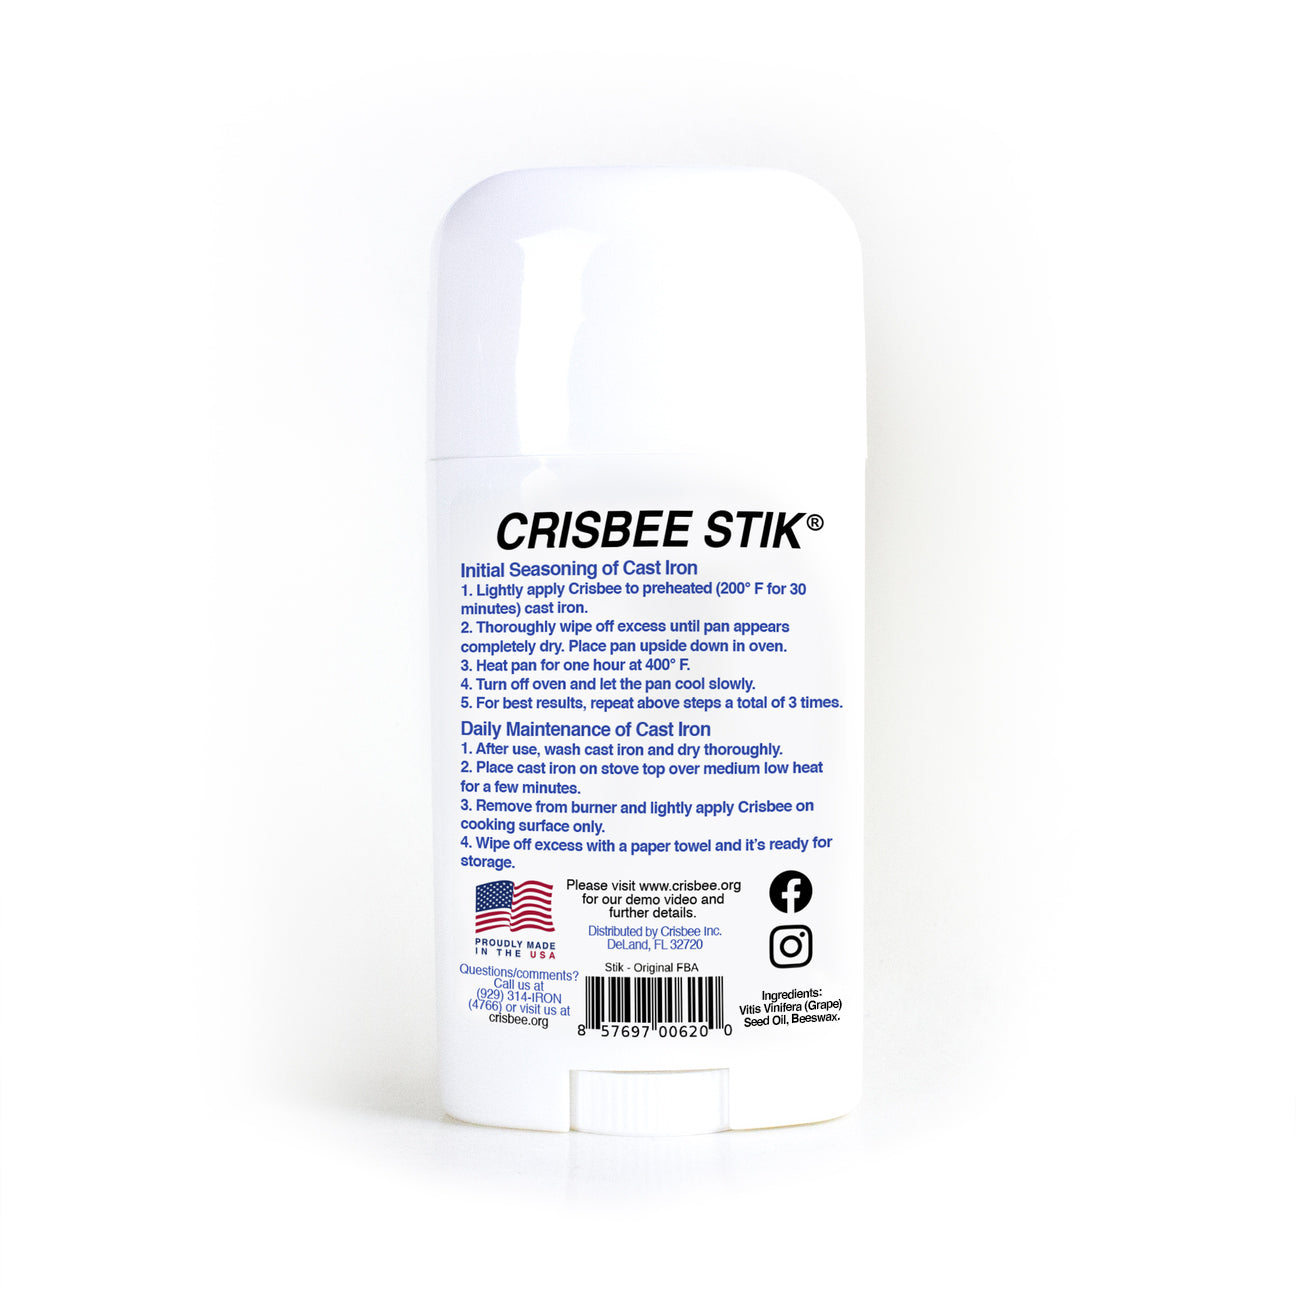 https://crisbee.org/cdn/shop/products/CrisbeeStikBackVitisVinifera.jpg?v=1681141303&width=1445